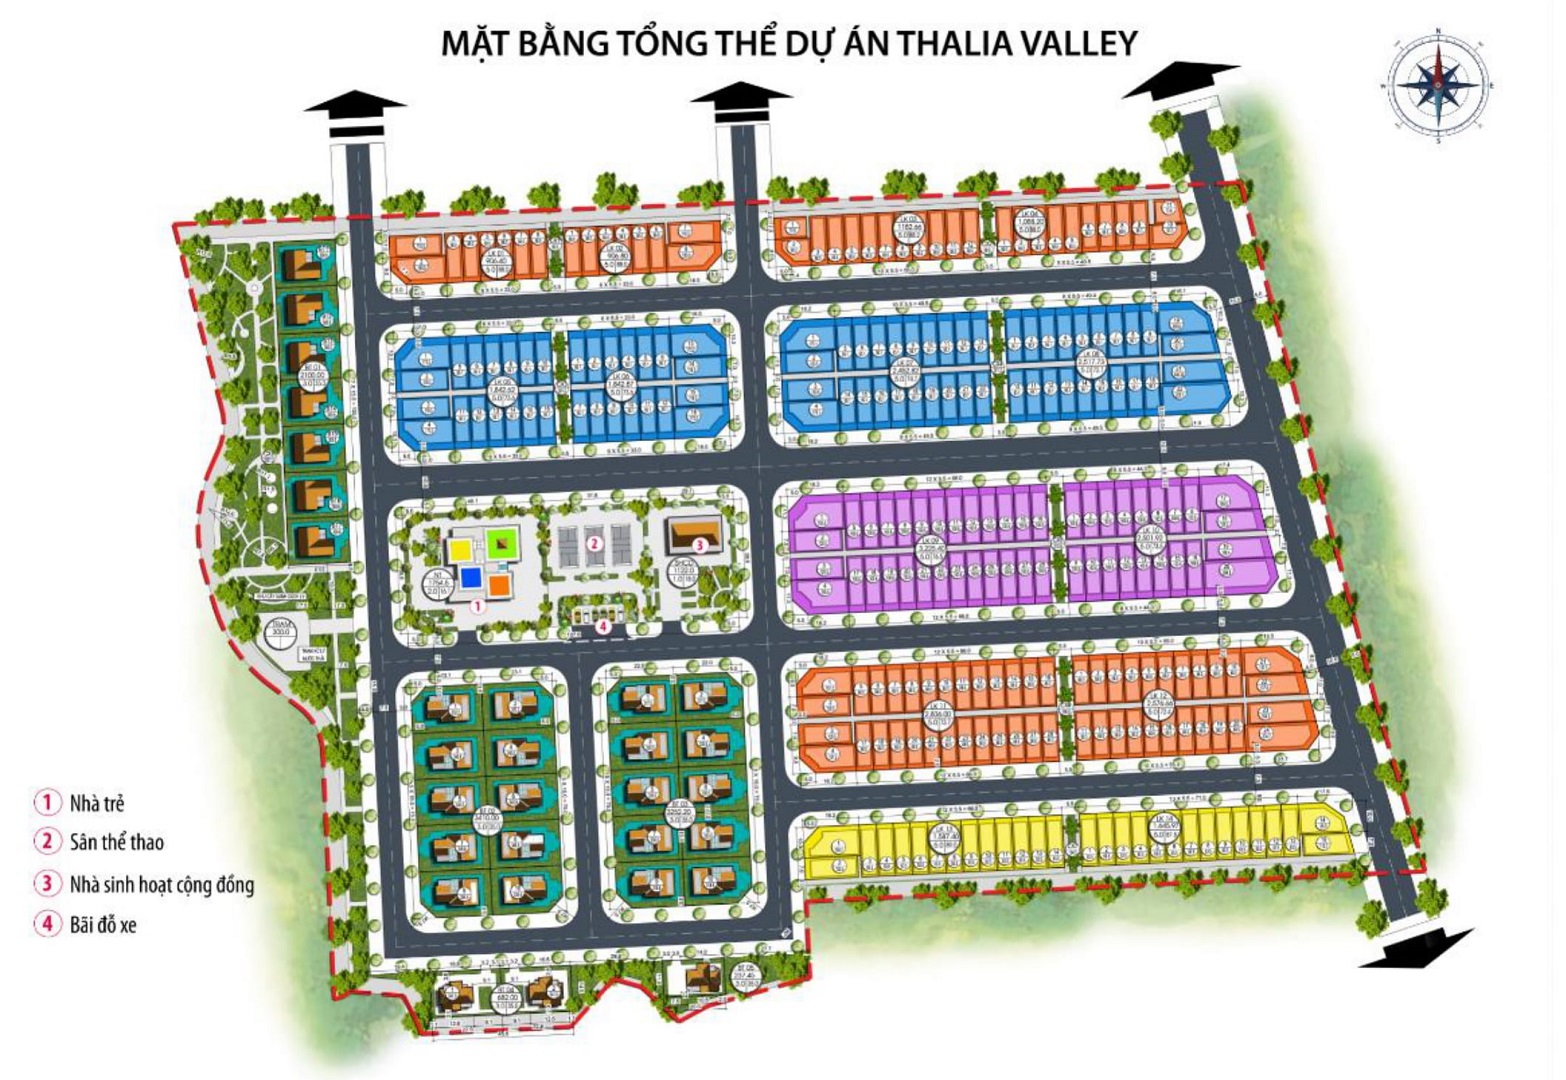 mặt bằng dự án thalia valley uông bí